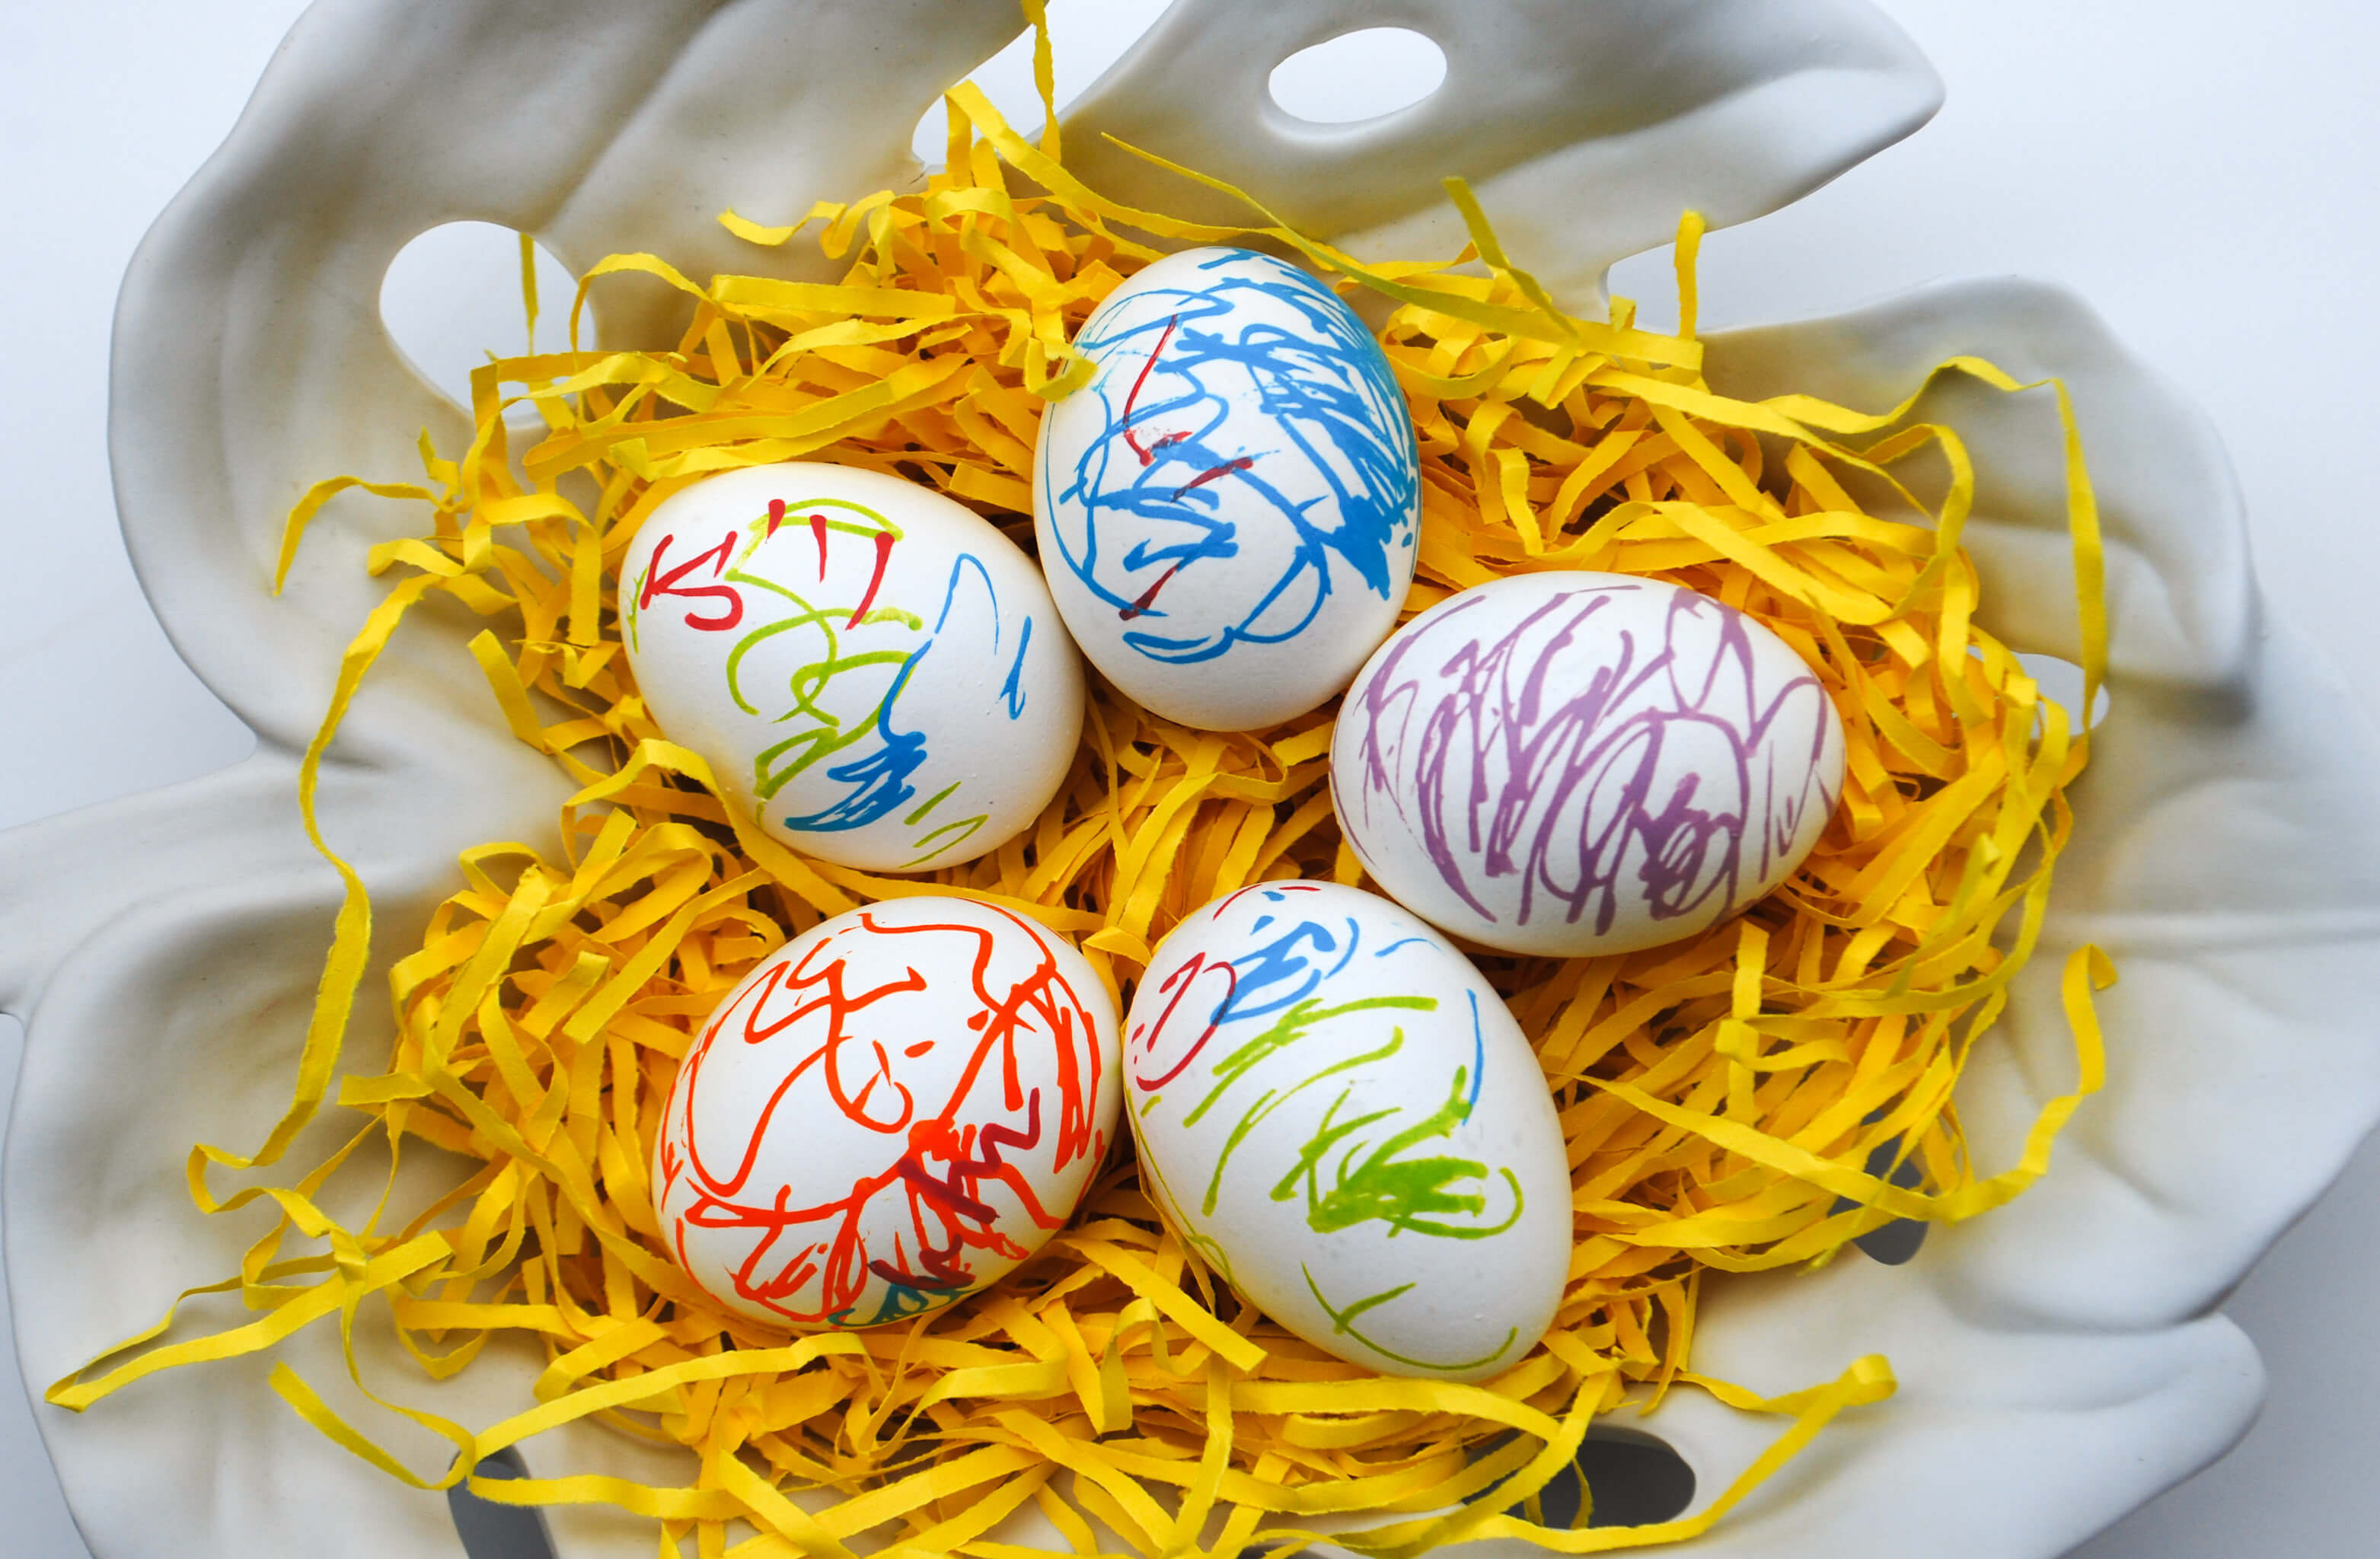 Как раскрасить яйца на пасху. Яйцо Пасха. Украшение пасхальных яиц. Разукрасить пасхальное яйцо. Раскрашенные пасхальные яйца.